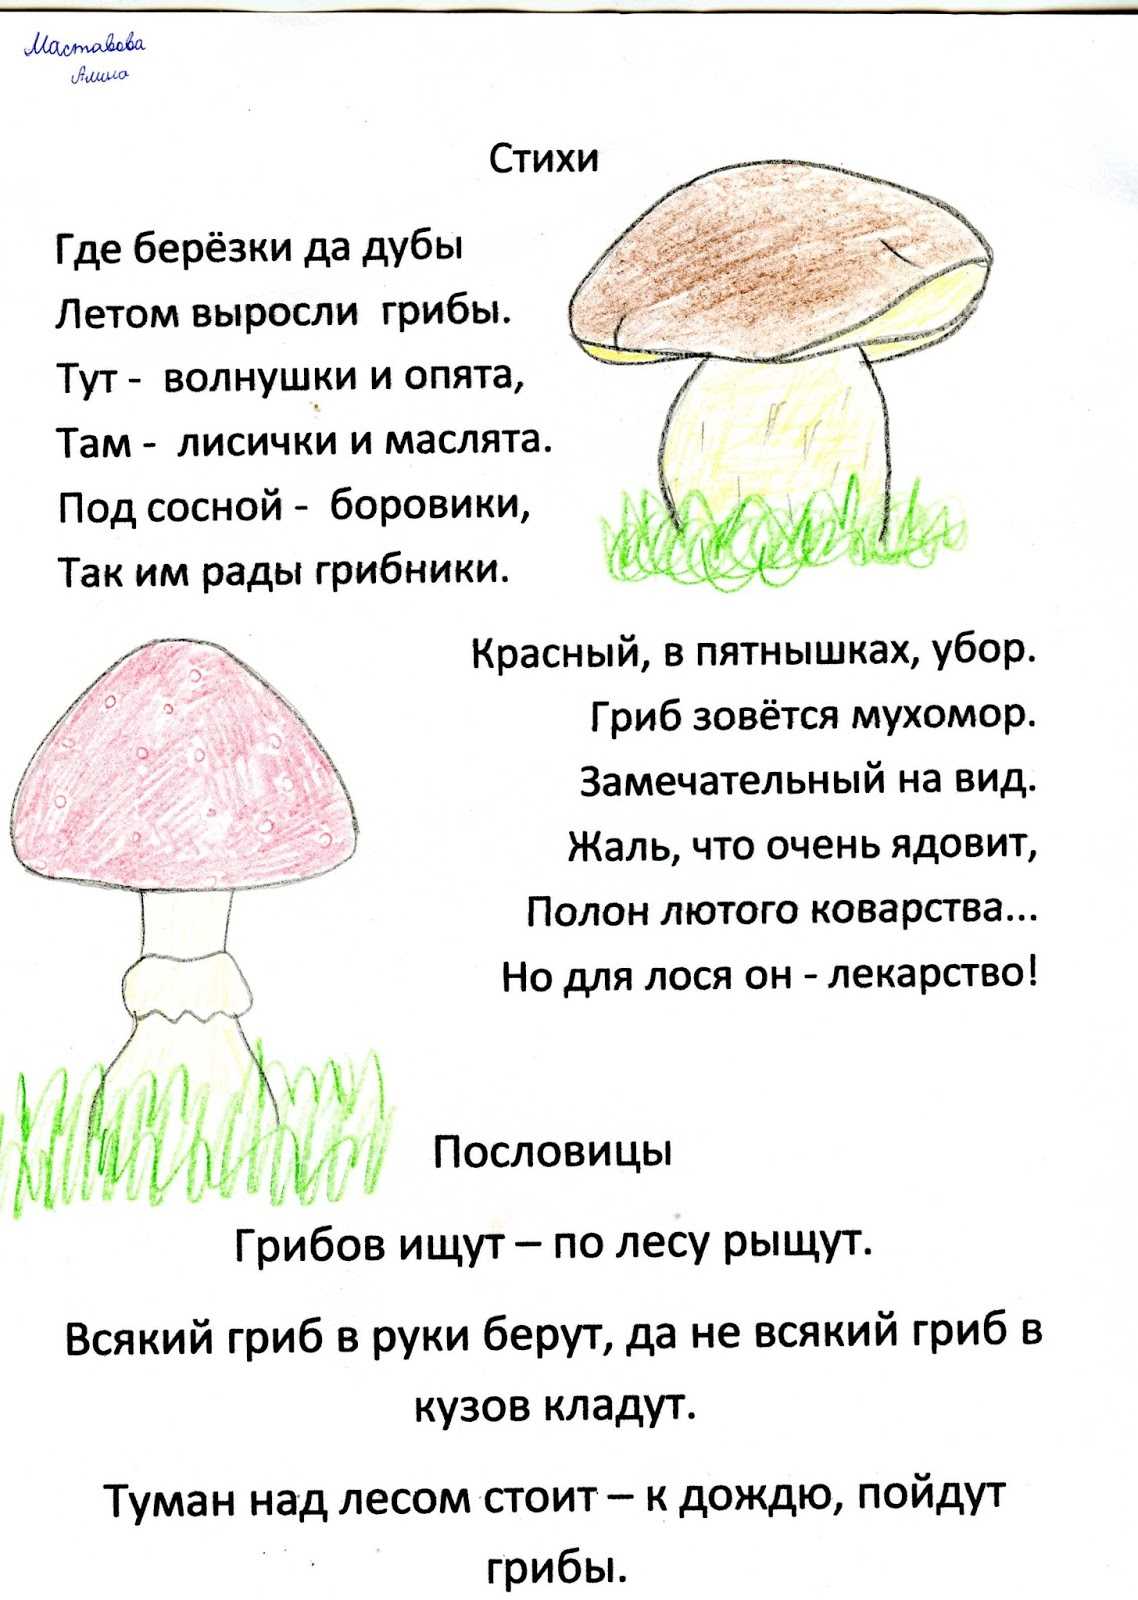 Стихи про грибы для детей | aababy - чем занять ребенка